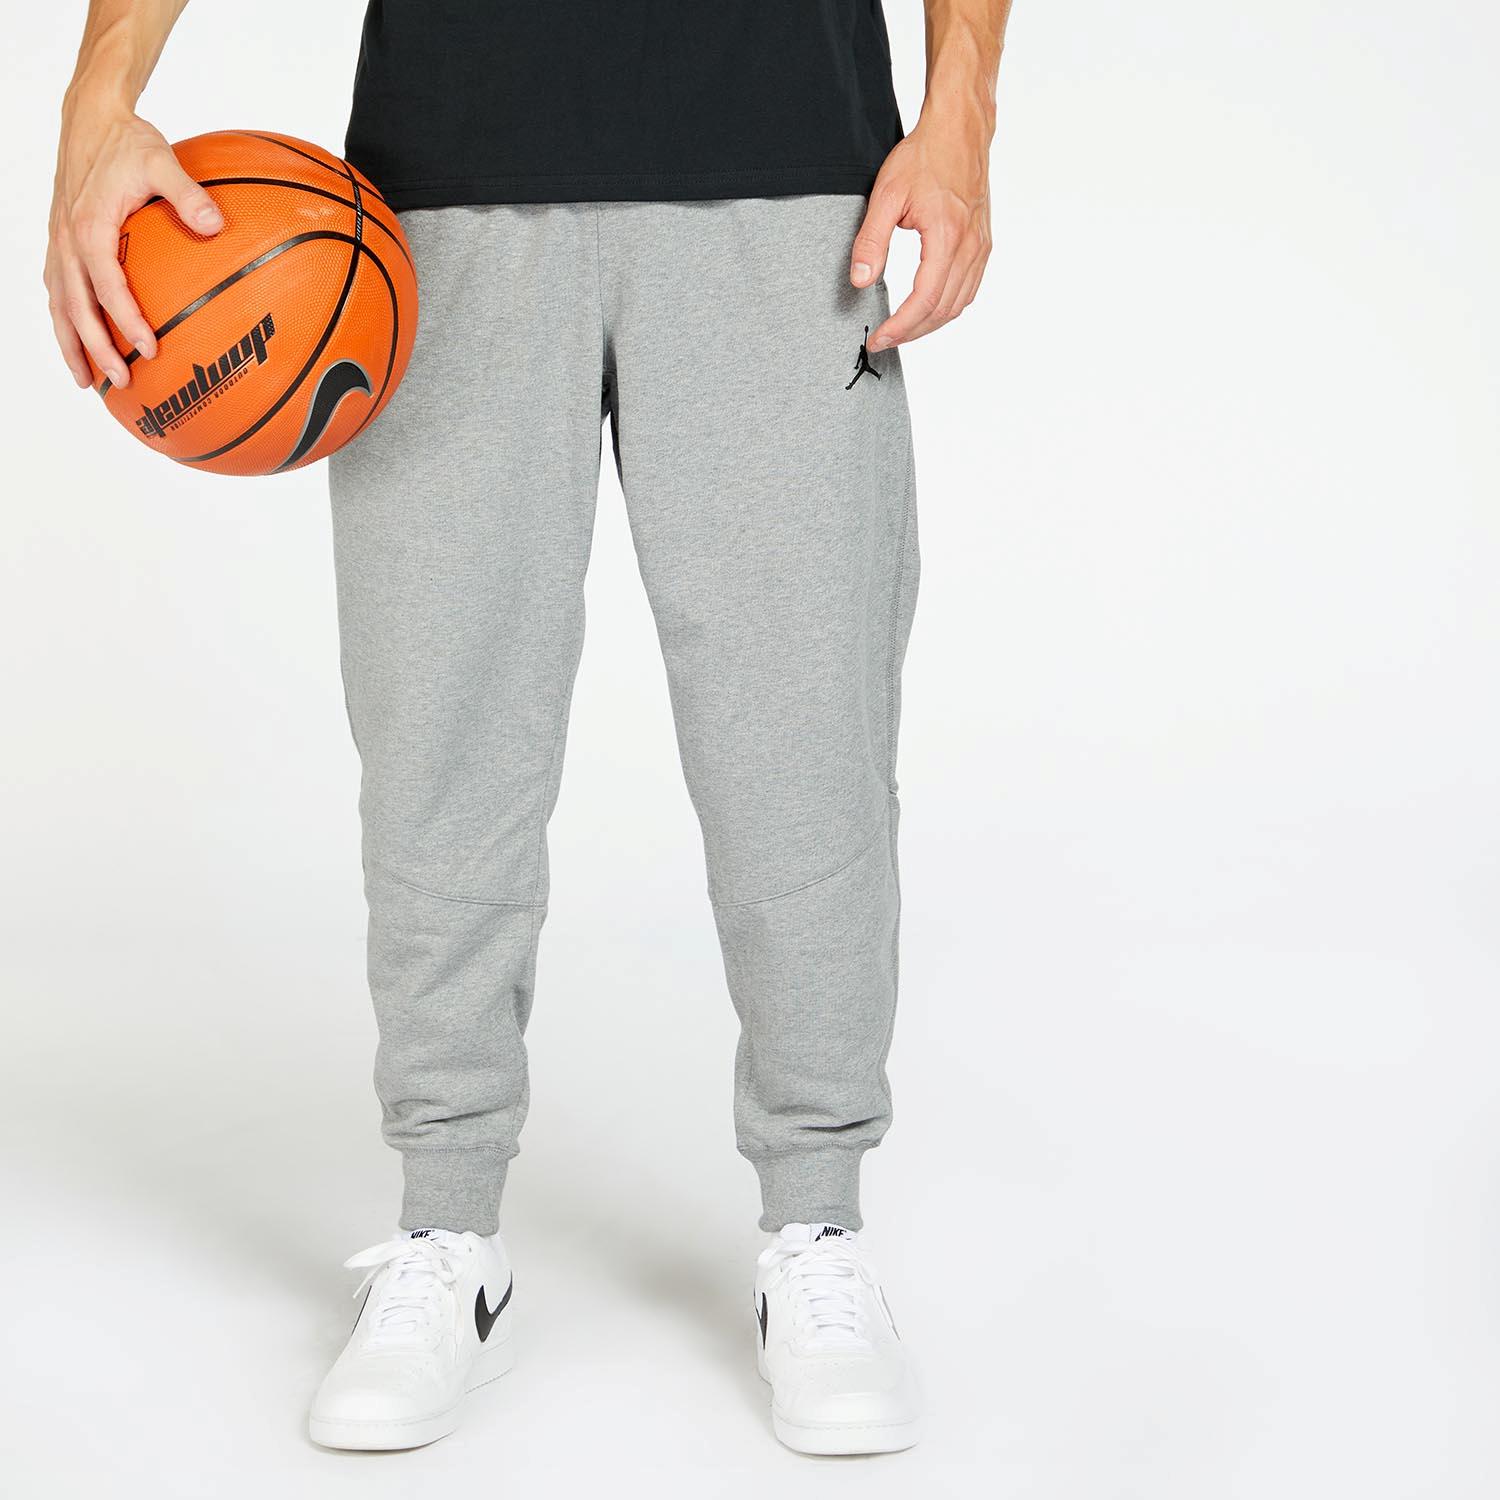 Nike Jordan Grises Pantalón Chándal Hombre |